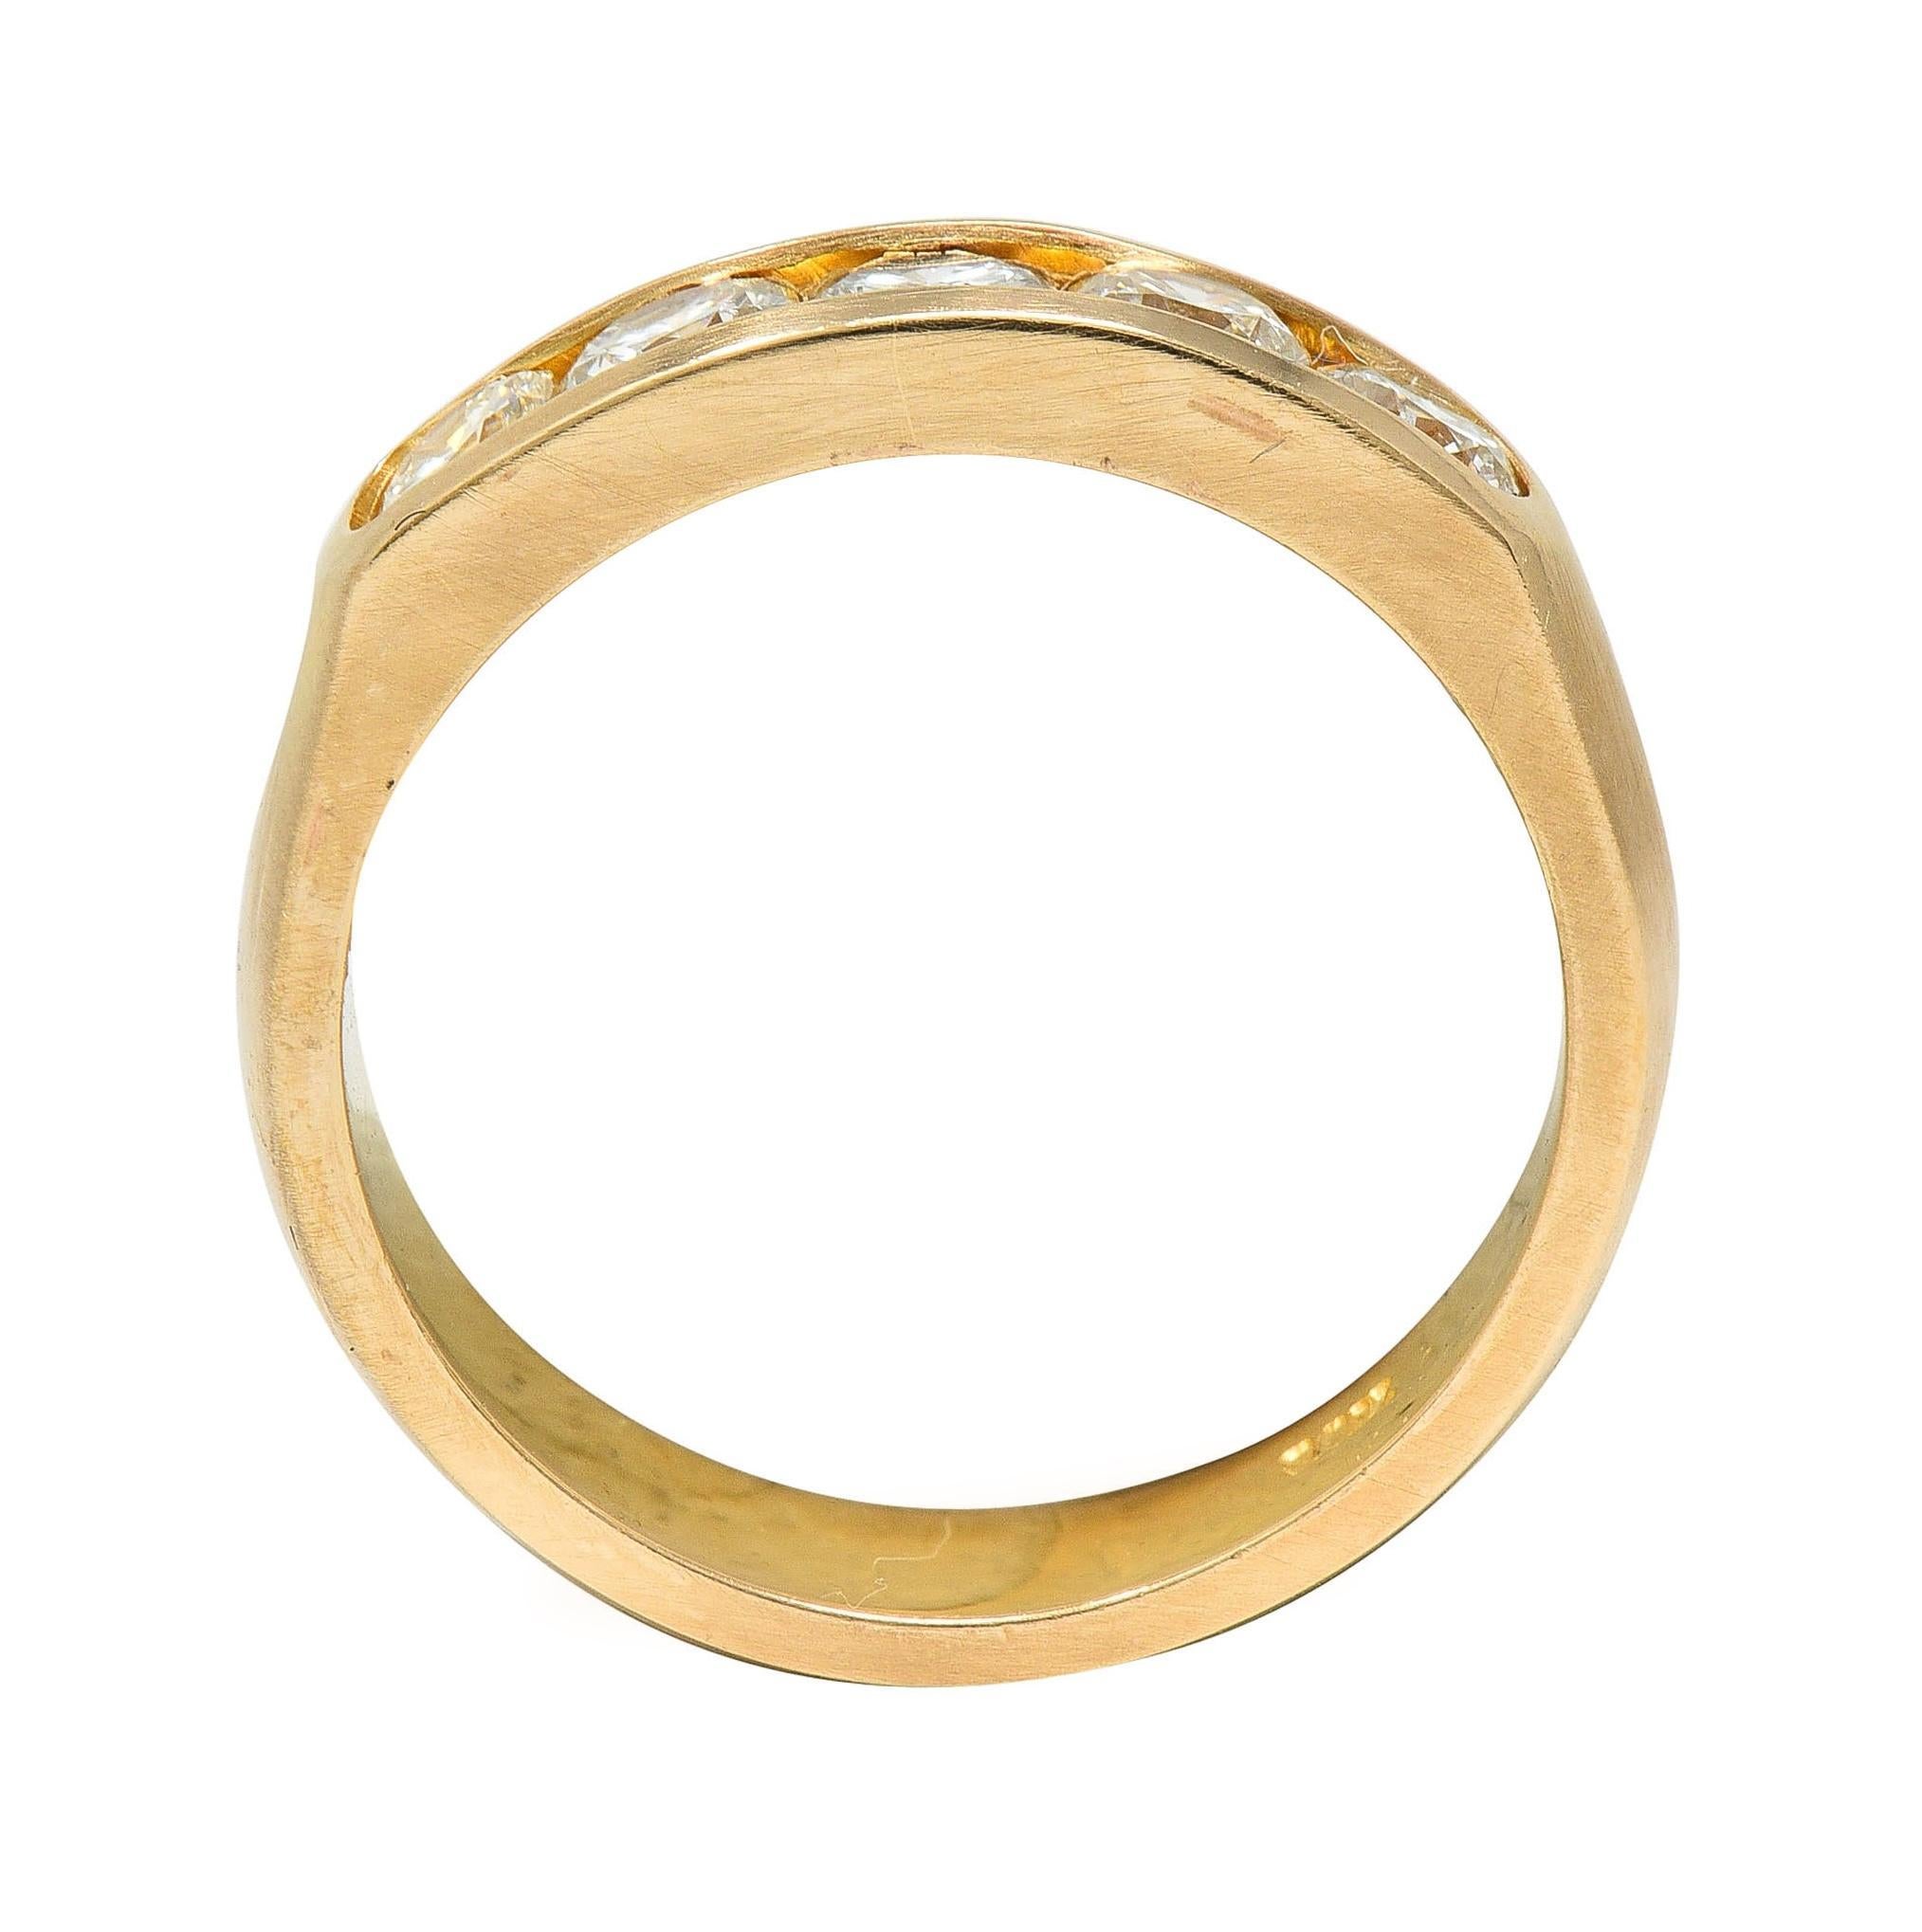 Vintage 0.80 CTW Transitional Cut Diamond 14 Karat Yellow Gold Band Ring 3